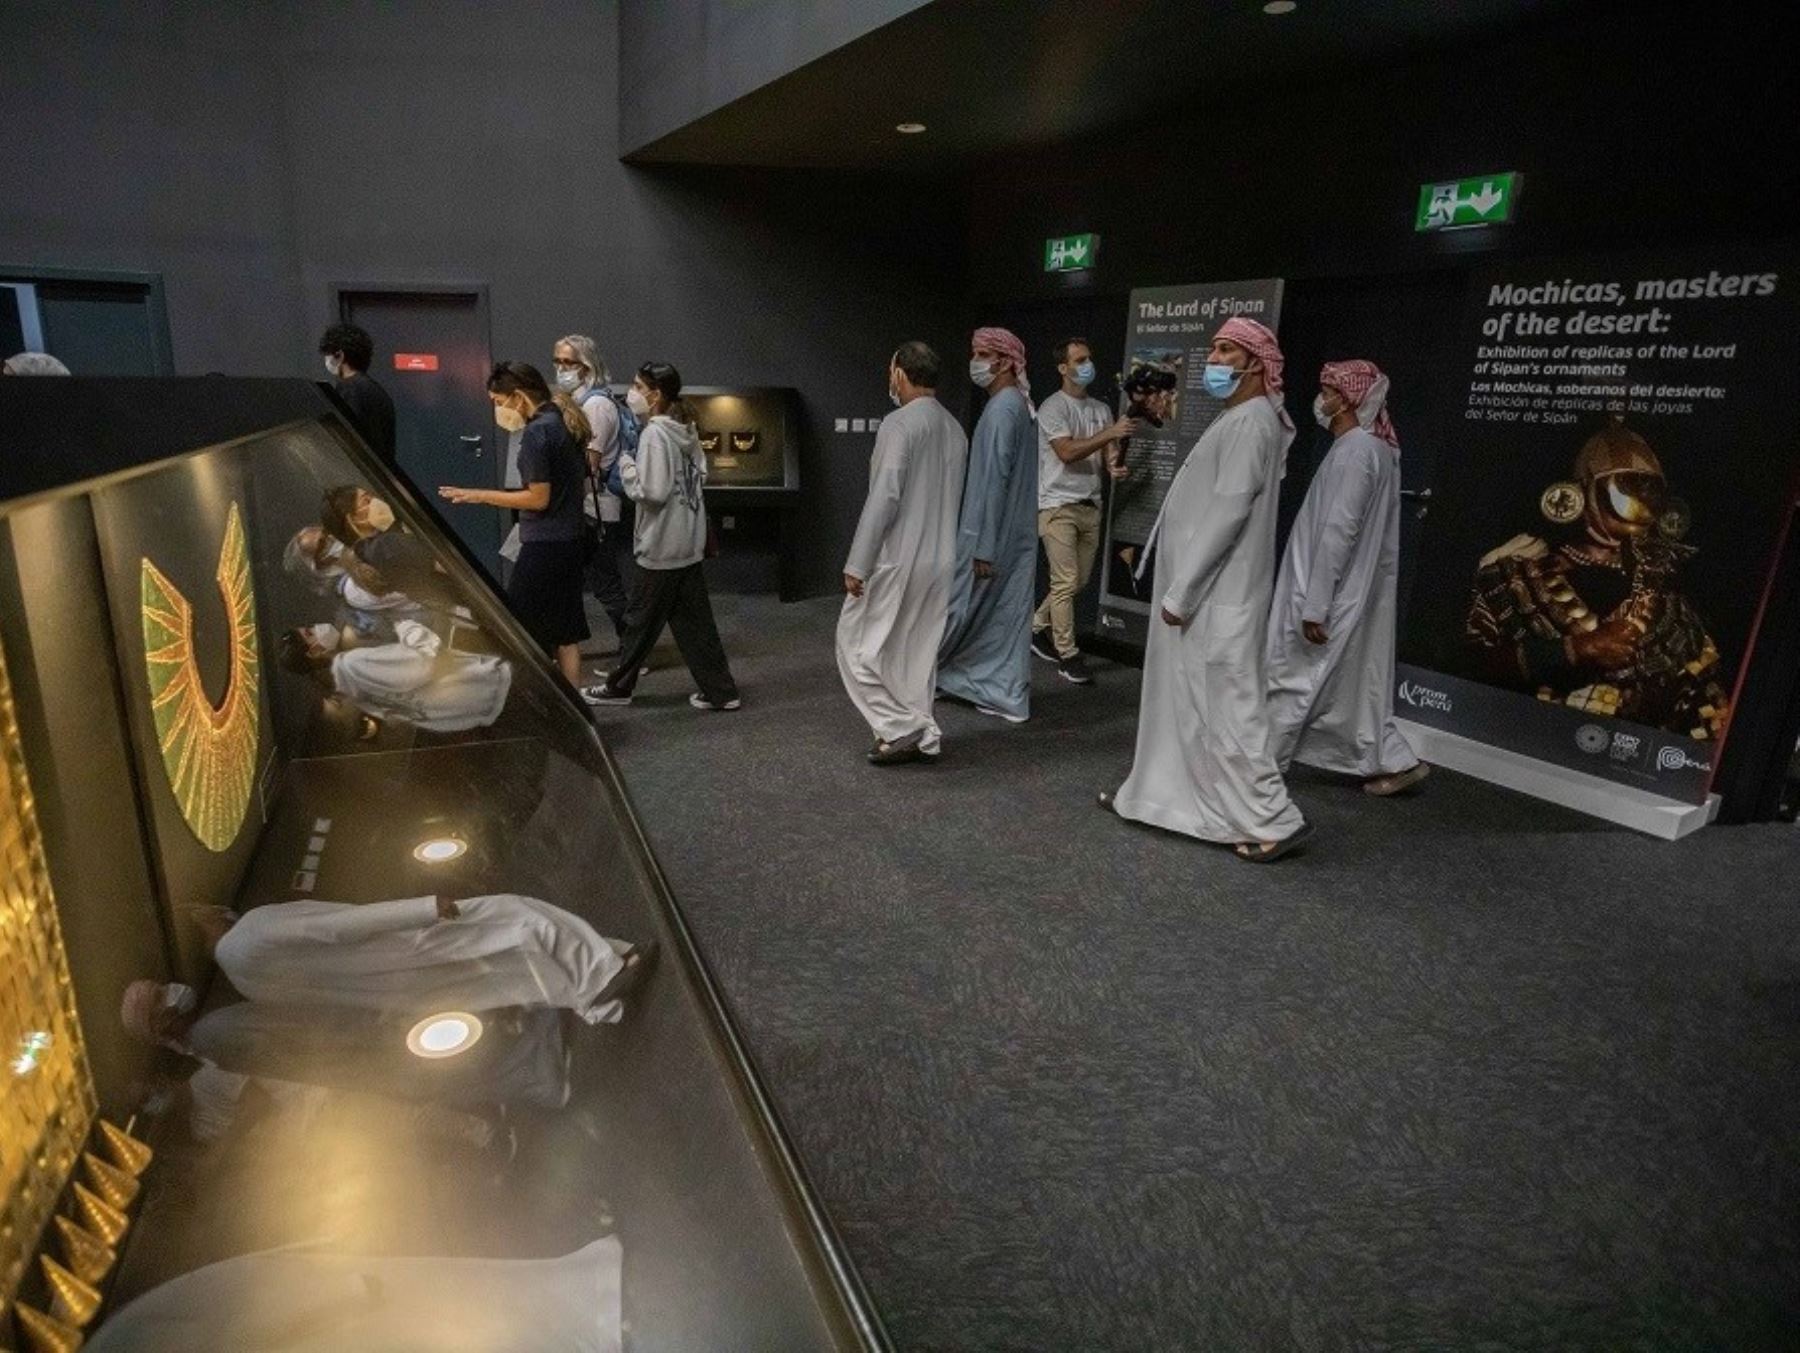 Exposición dedicada al Señor de Sipán deslumbra en la Expo 2020 Dubái. La muestra estará abierta hasta el 31 de enero del 2022.